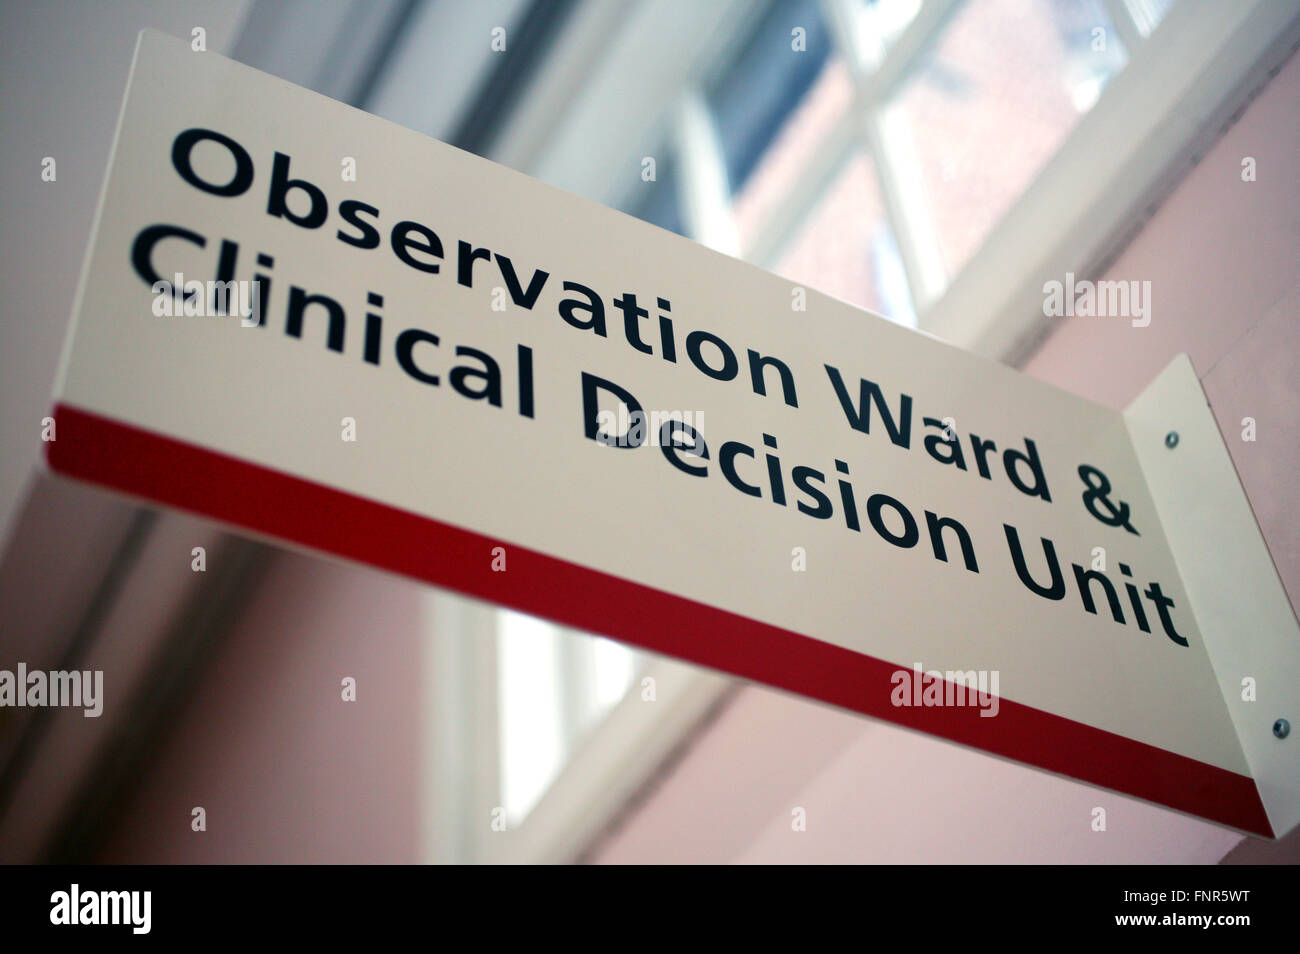 Signo de hospital para la observación Ward & Unidad a la toma de decisiones clínicas. Foto de stock